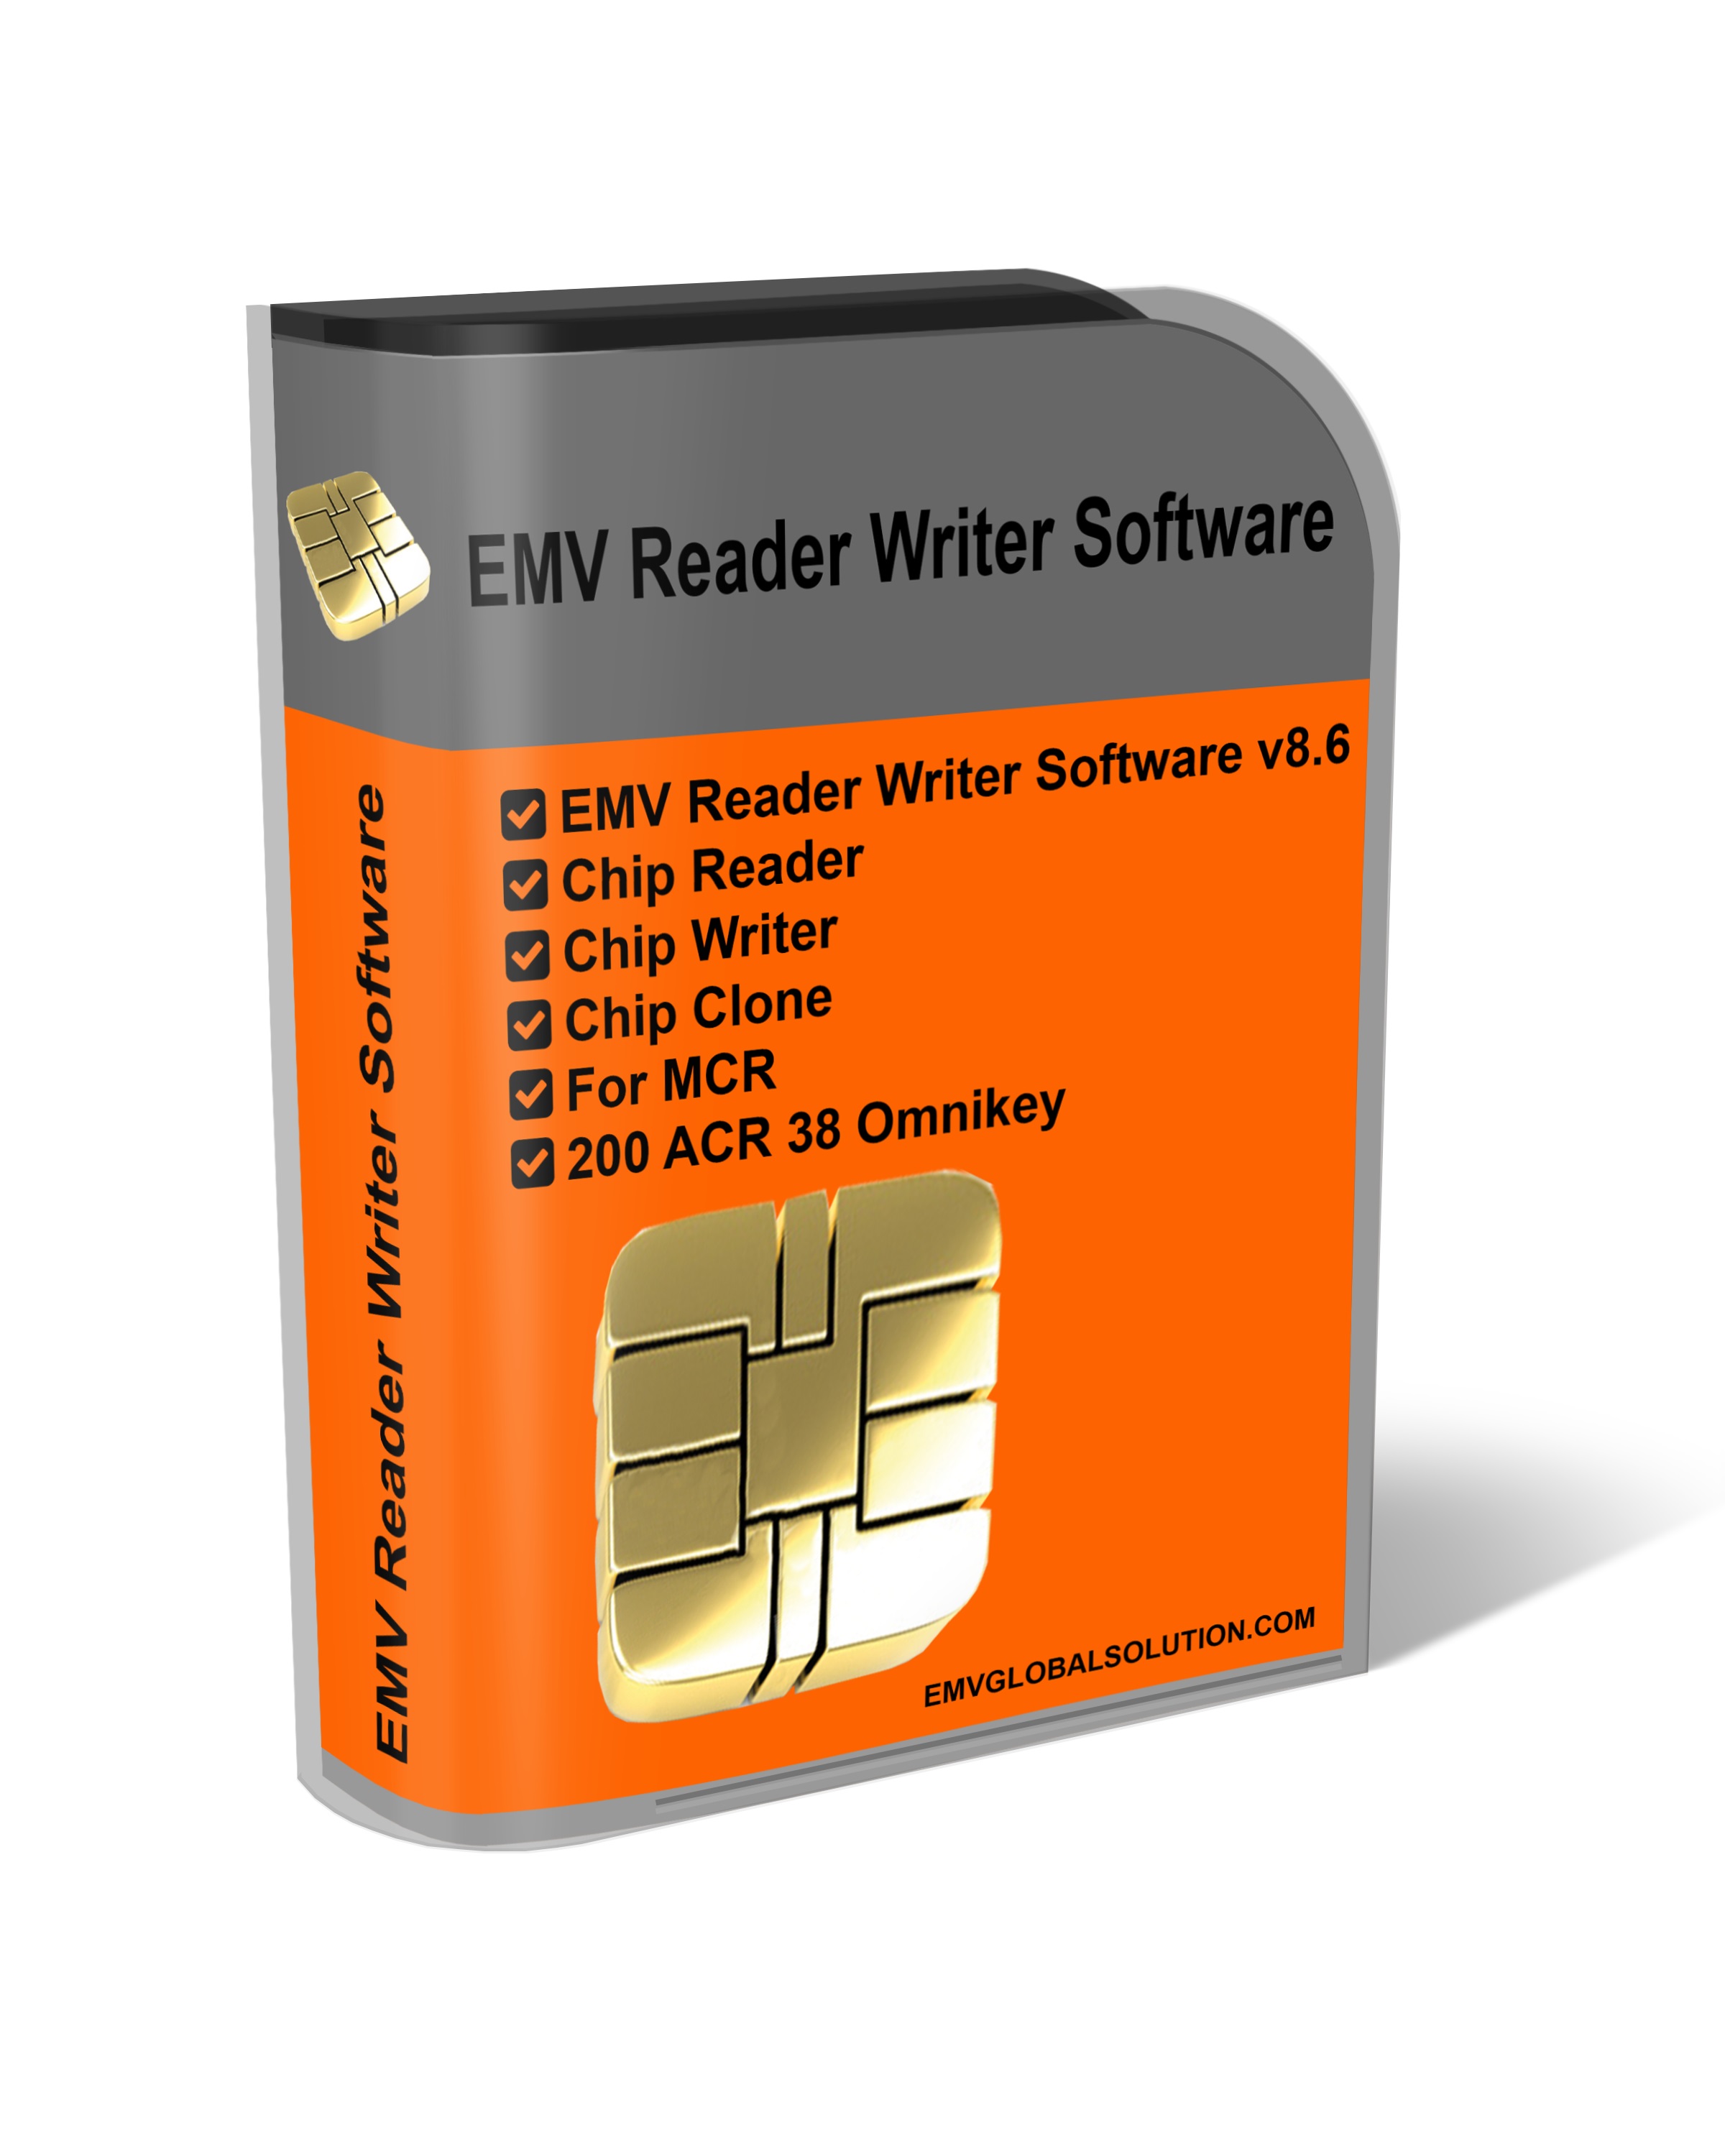 Emv reader writer software free download 2021 download speed checker